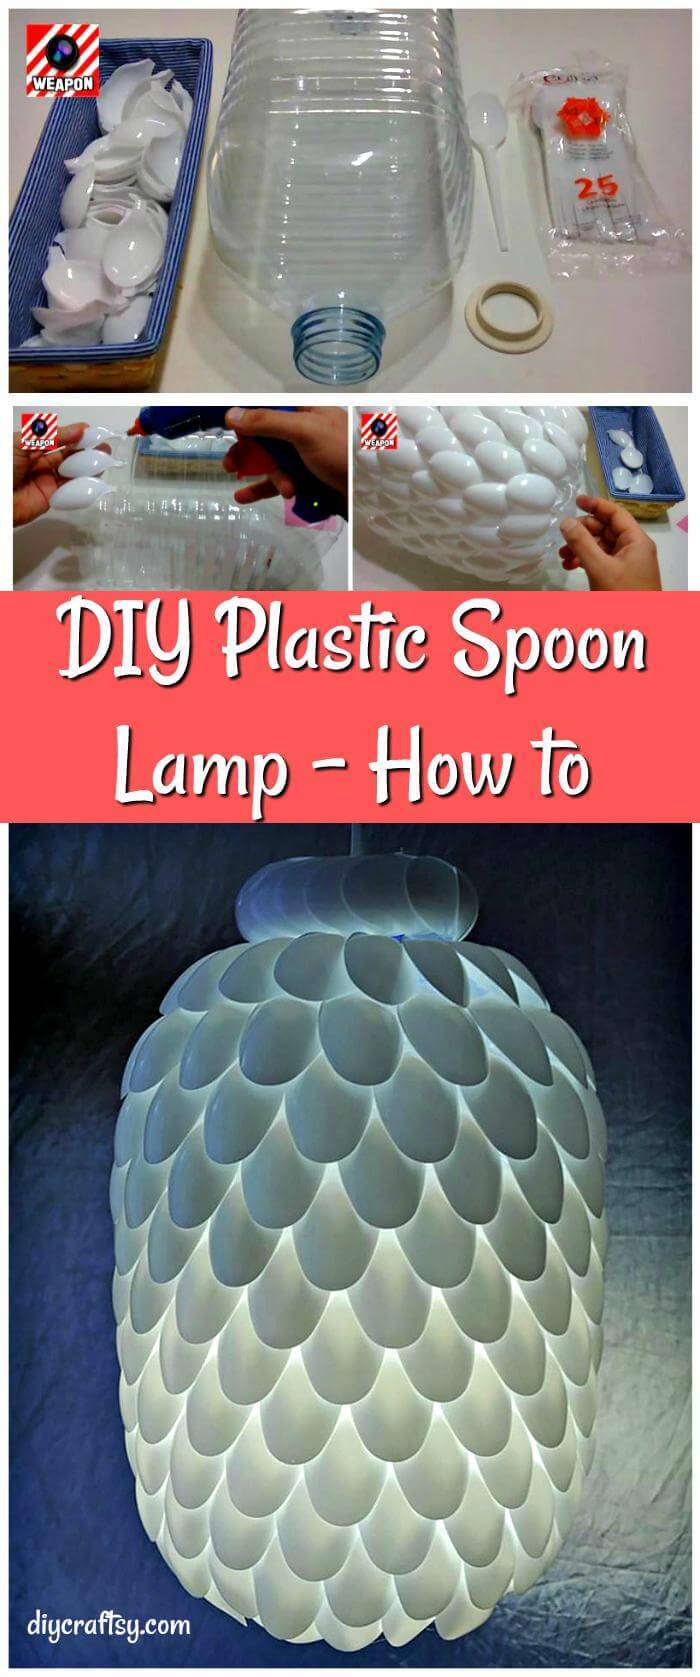 DIY Plastic Spoon Lamp